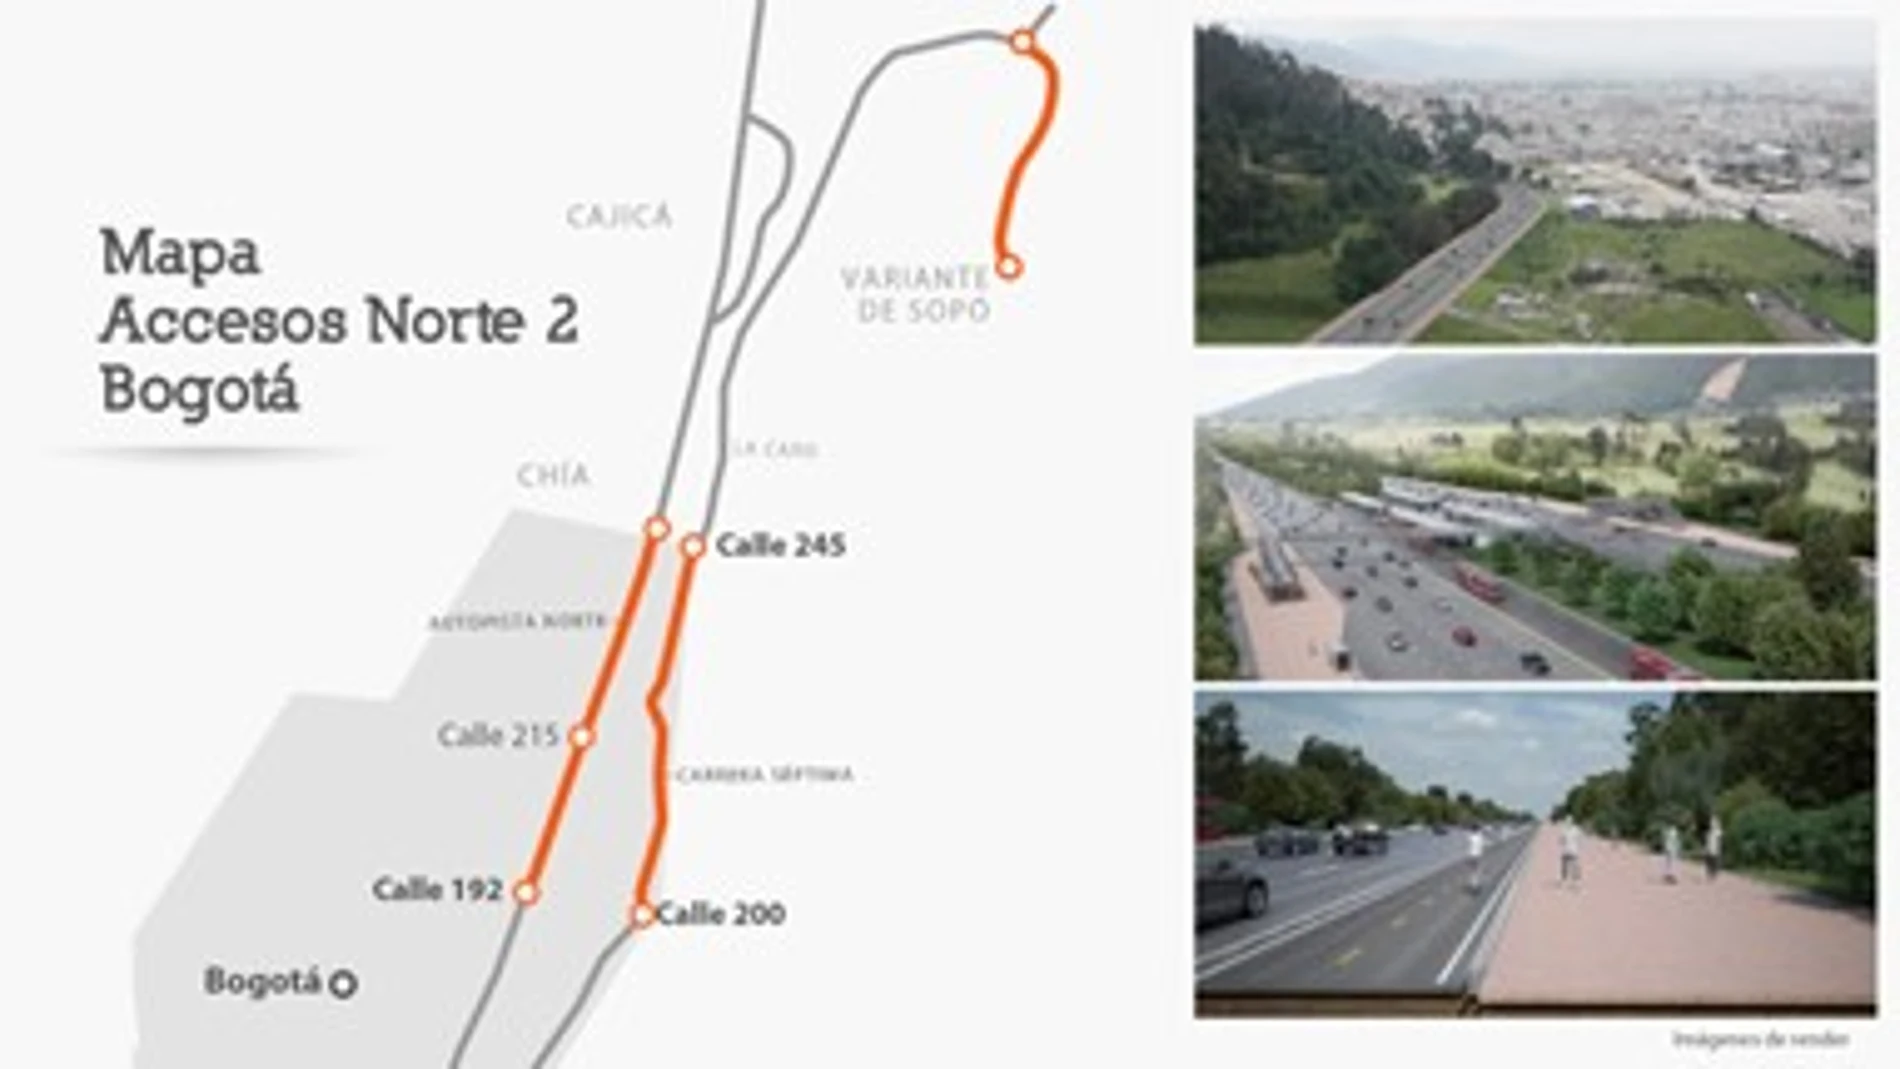 Mapa de Accesos Norte 2 Bogotá